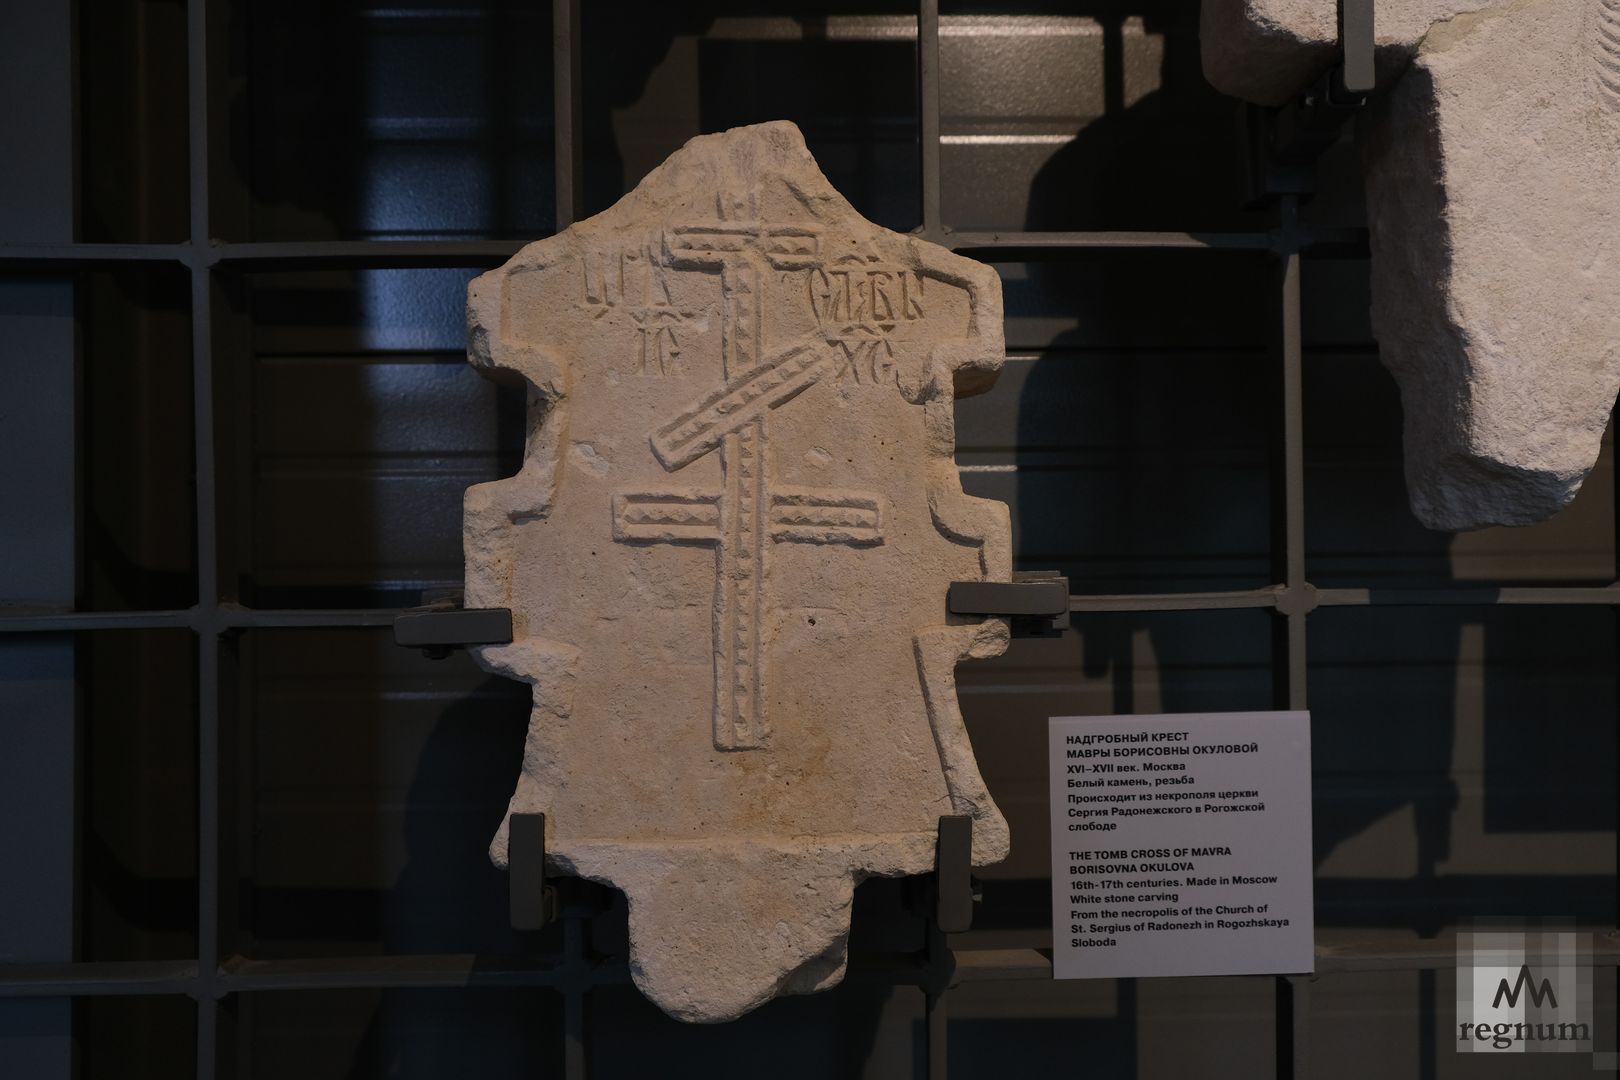 Надгробный крест Мавры Борисовны Окуловой XVI–XVII вв.